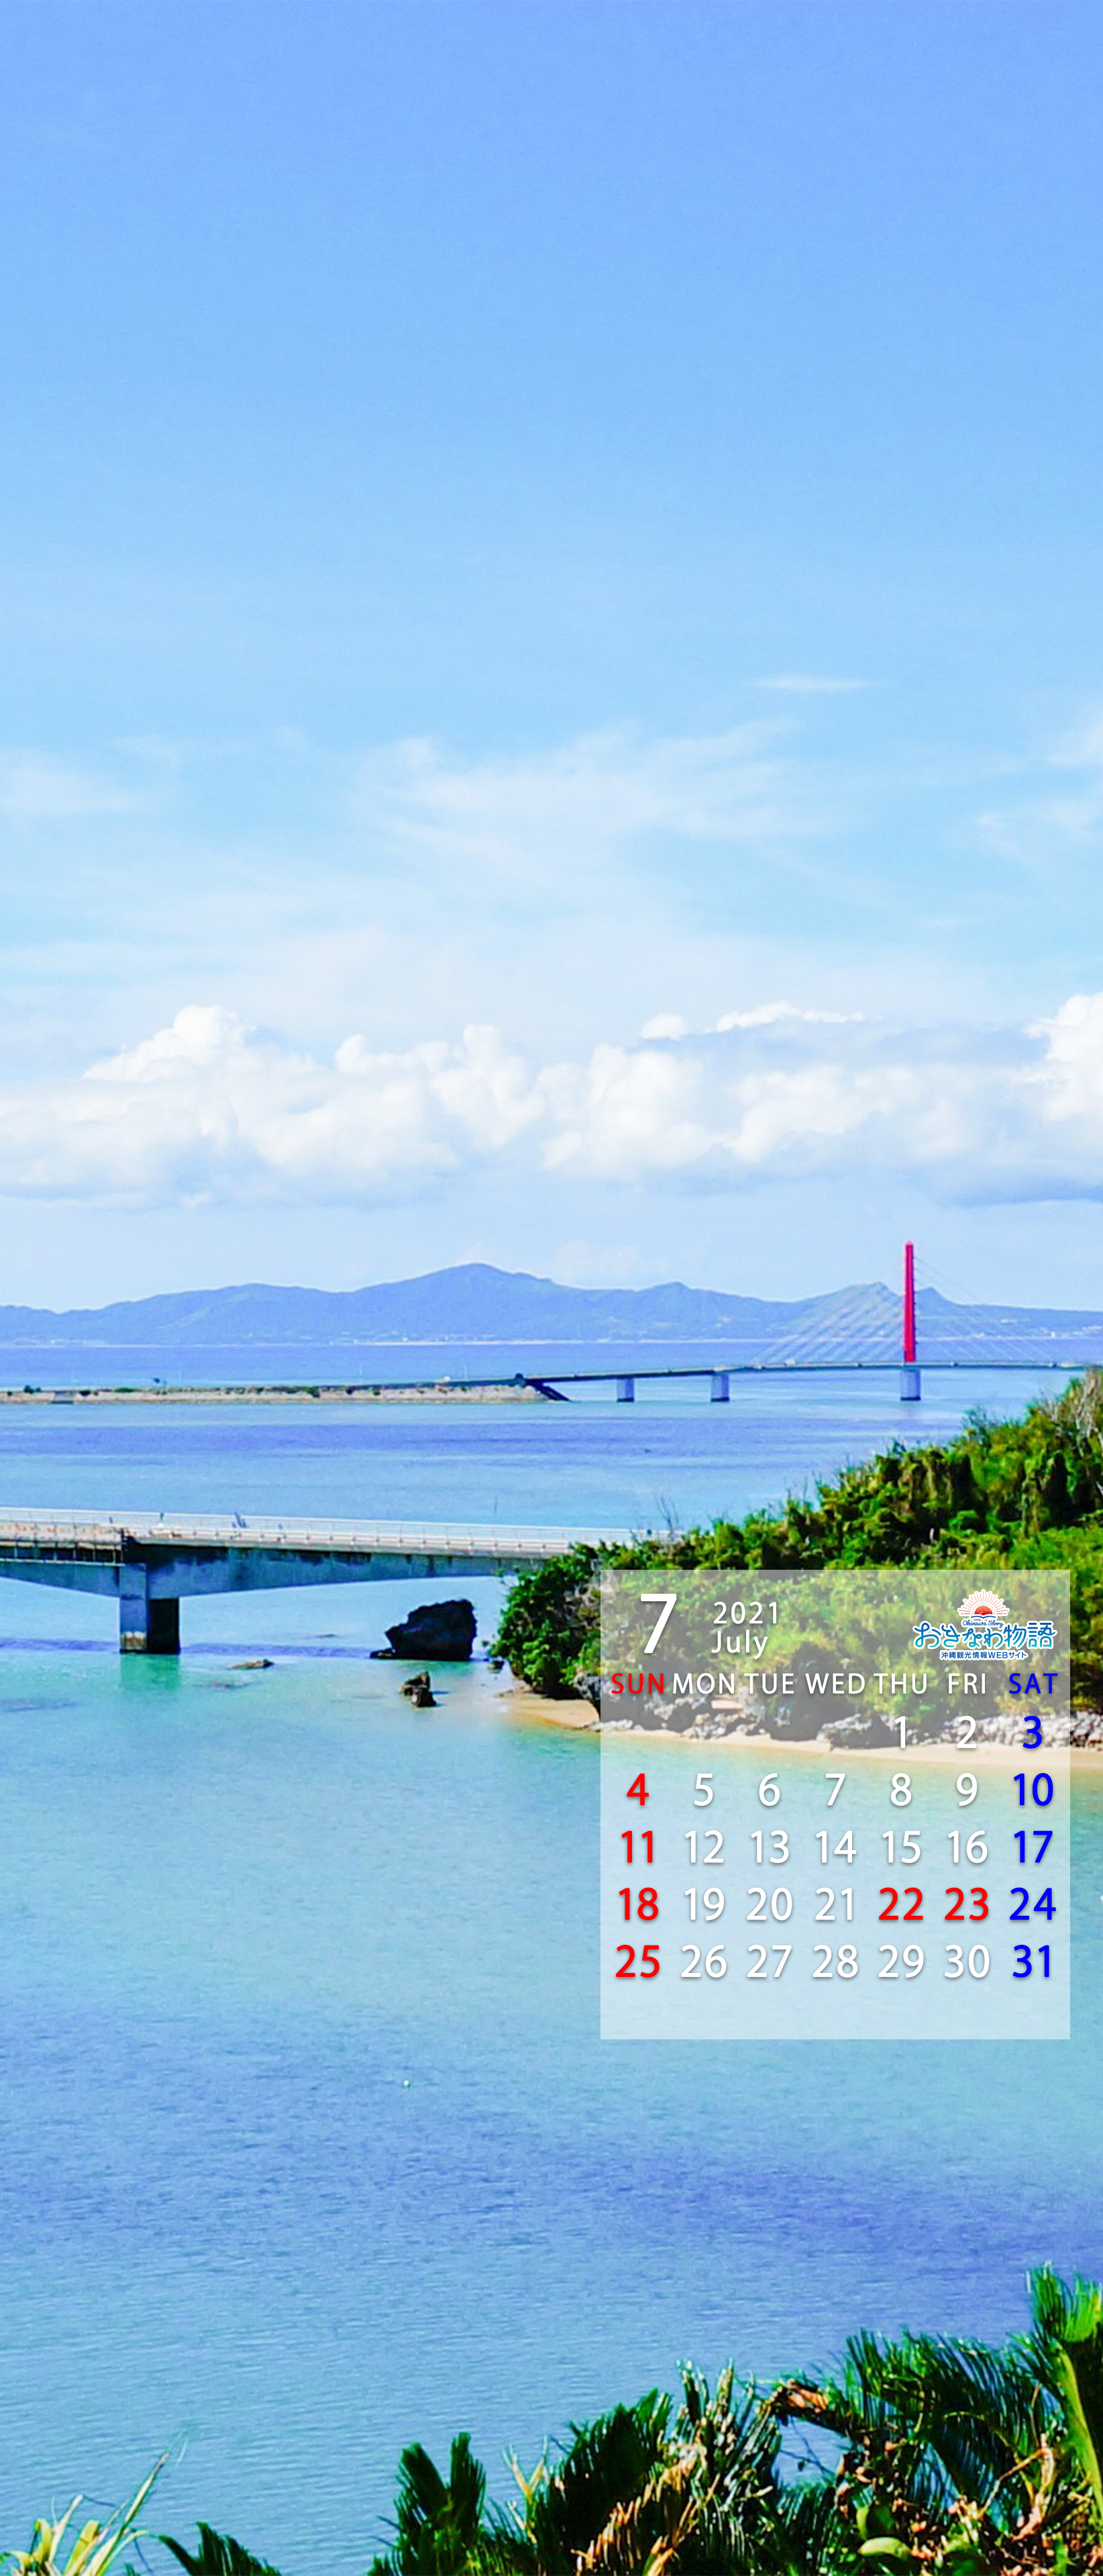 21年壁紙カレンダー 沖縄観光情報webサイト おきなわ物語